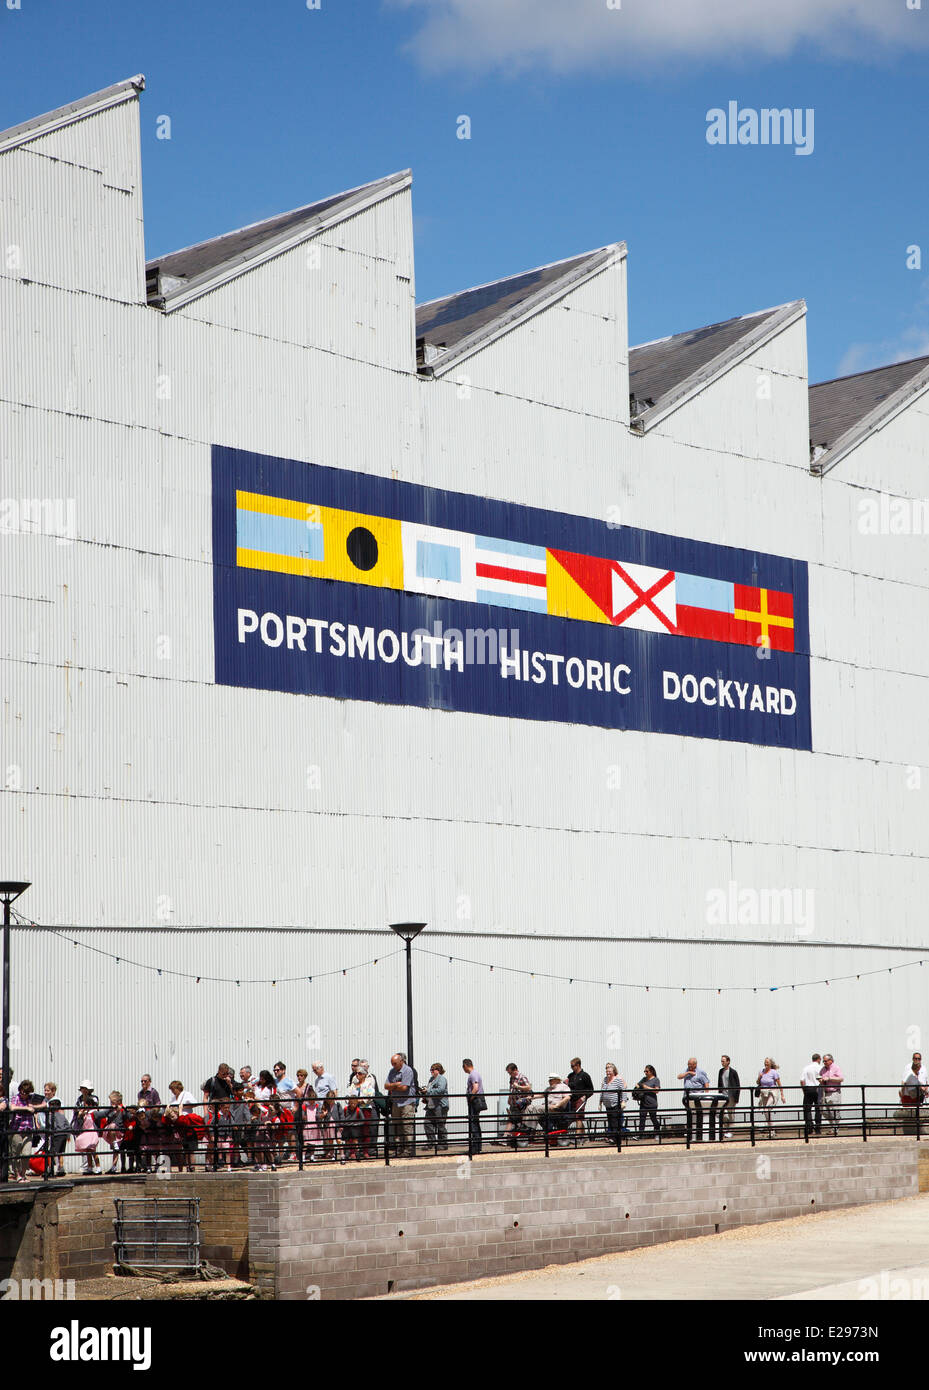 Portsmouth Historic Dockyard. Stock Photo